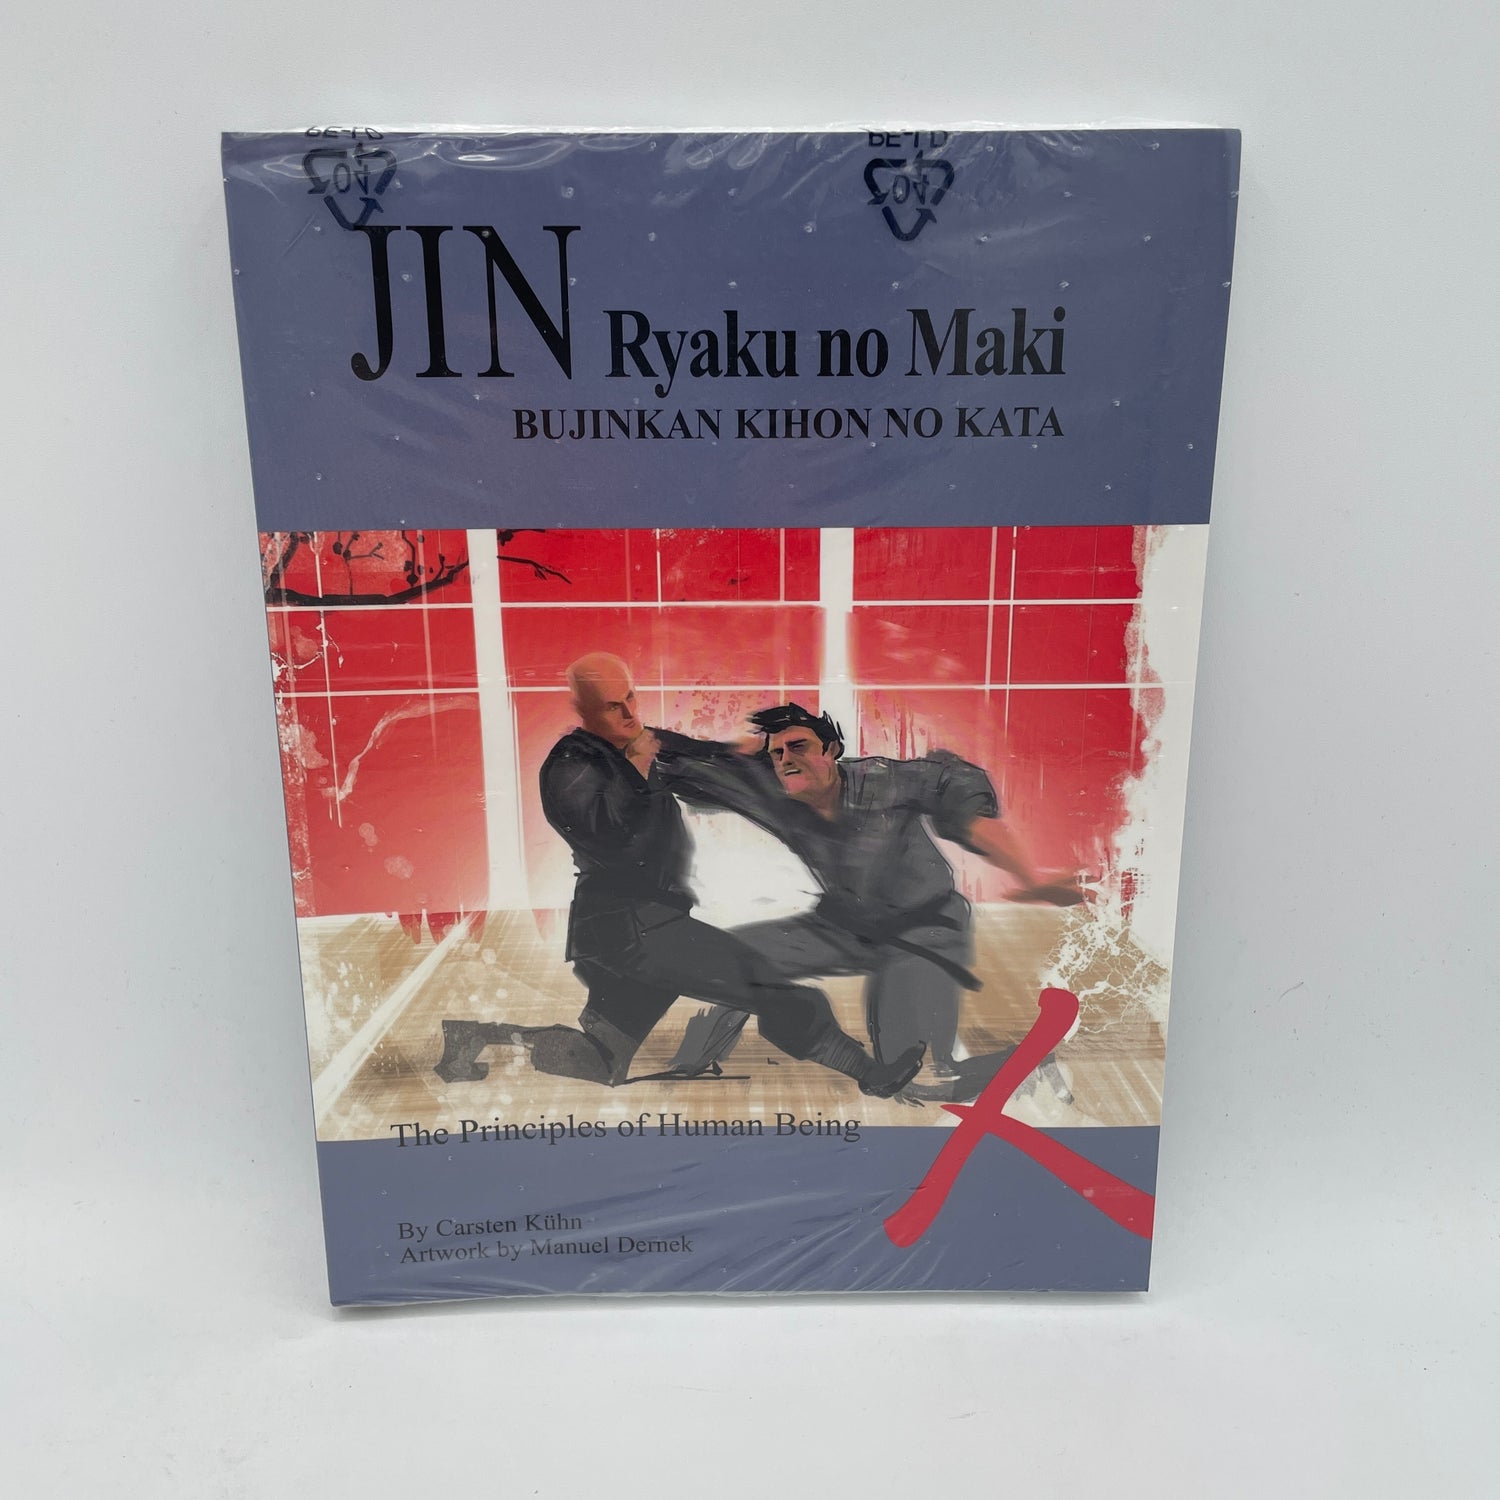 Jin Ryaku no Maki (Principles of Man) Book by Carsten Kuhn